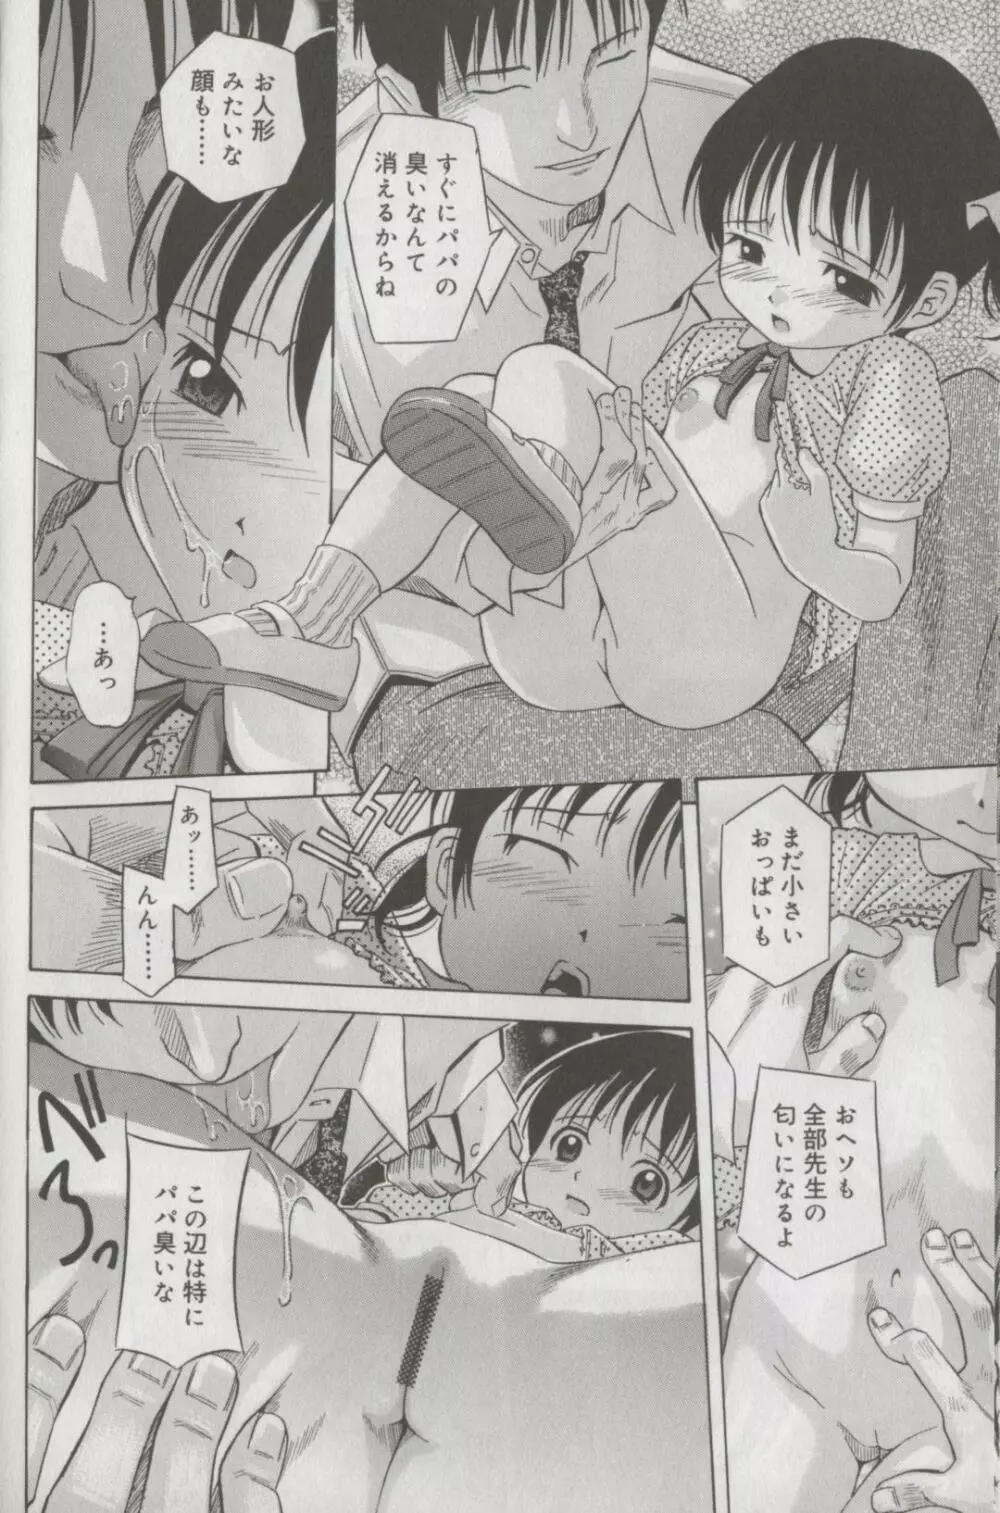 Kotori-kan Vol 3 13ページ